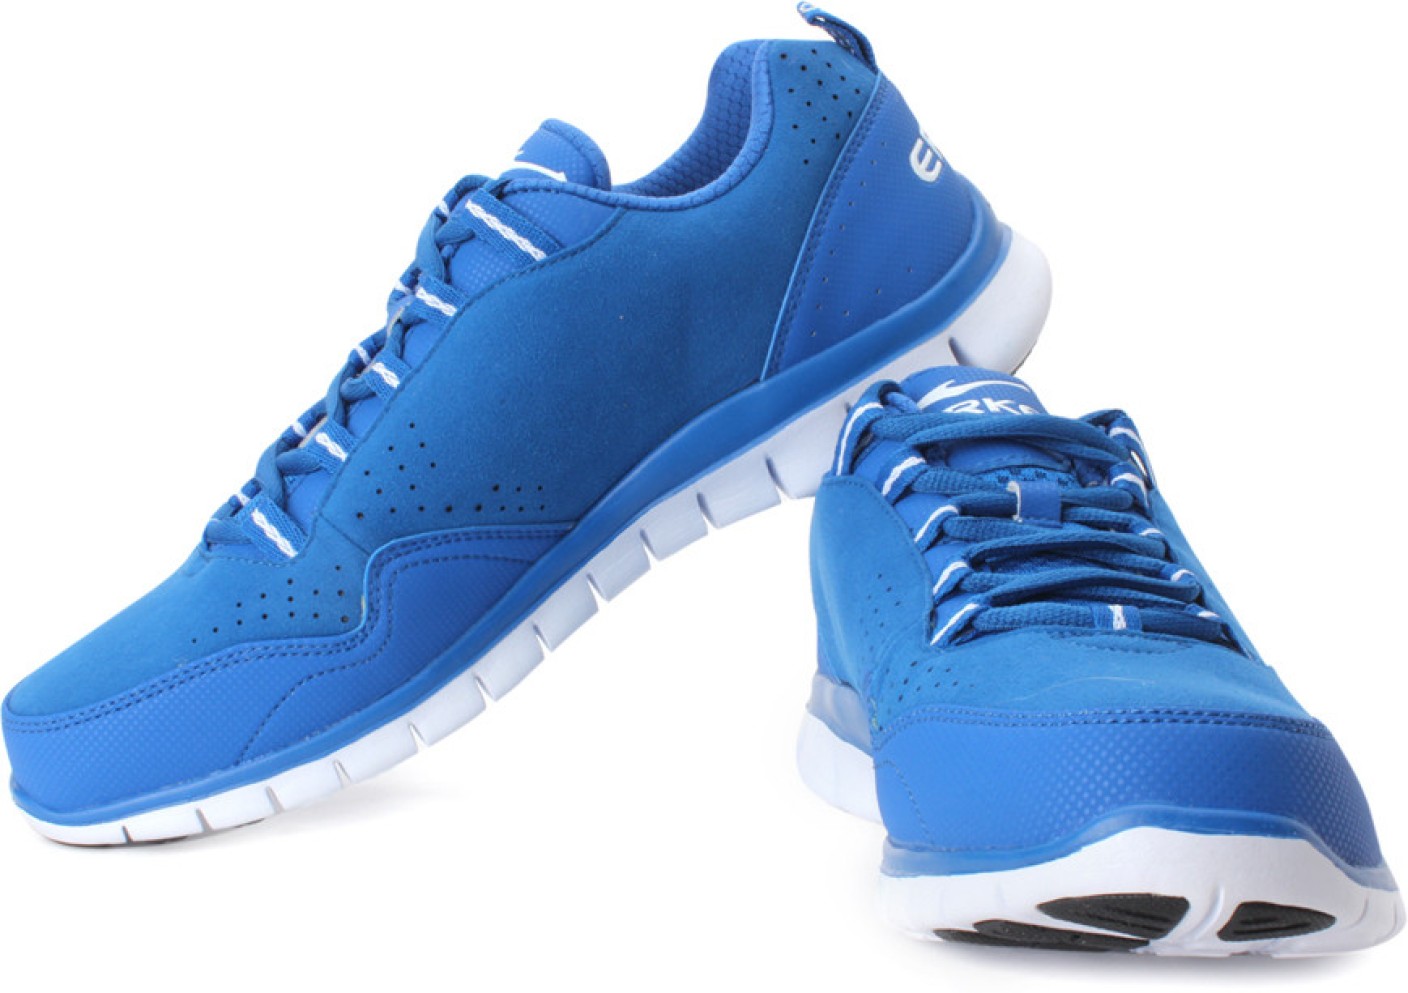 Erke Training Shoes For Men - Buy Royal Blue Color Erke Training Shoes ...